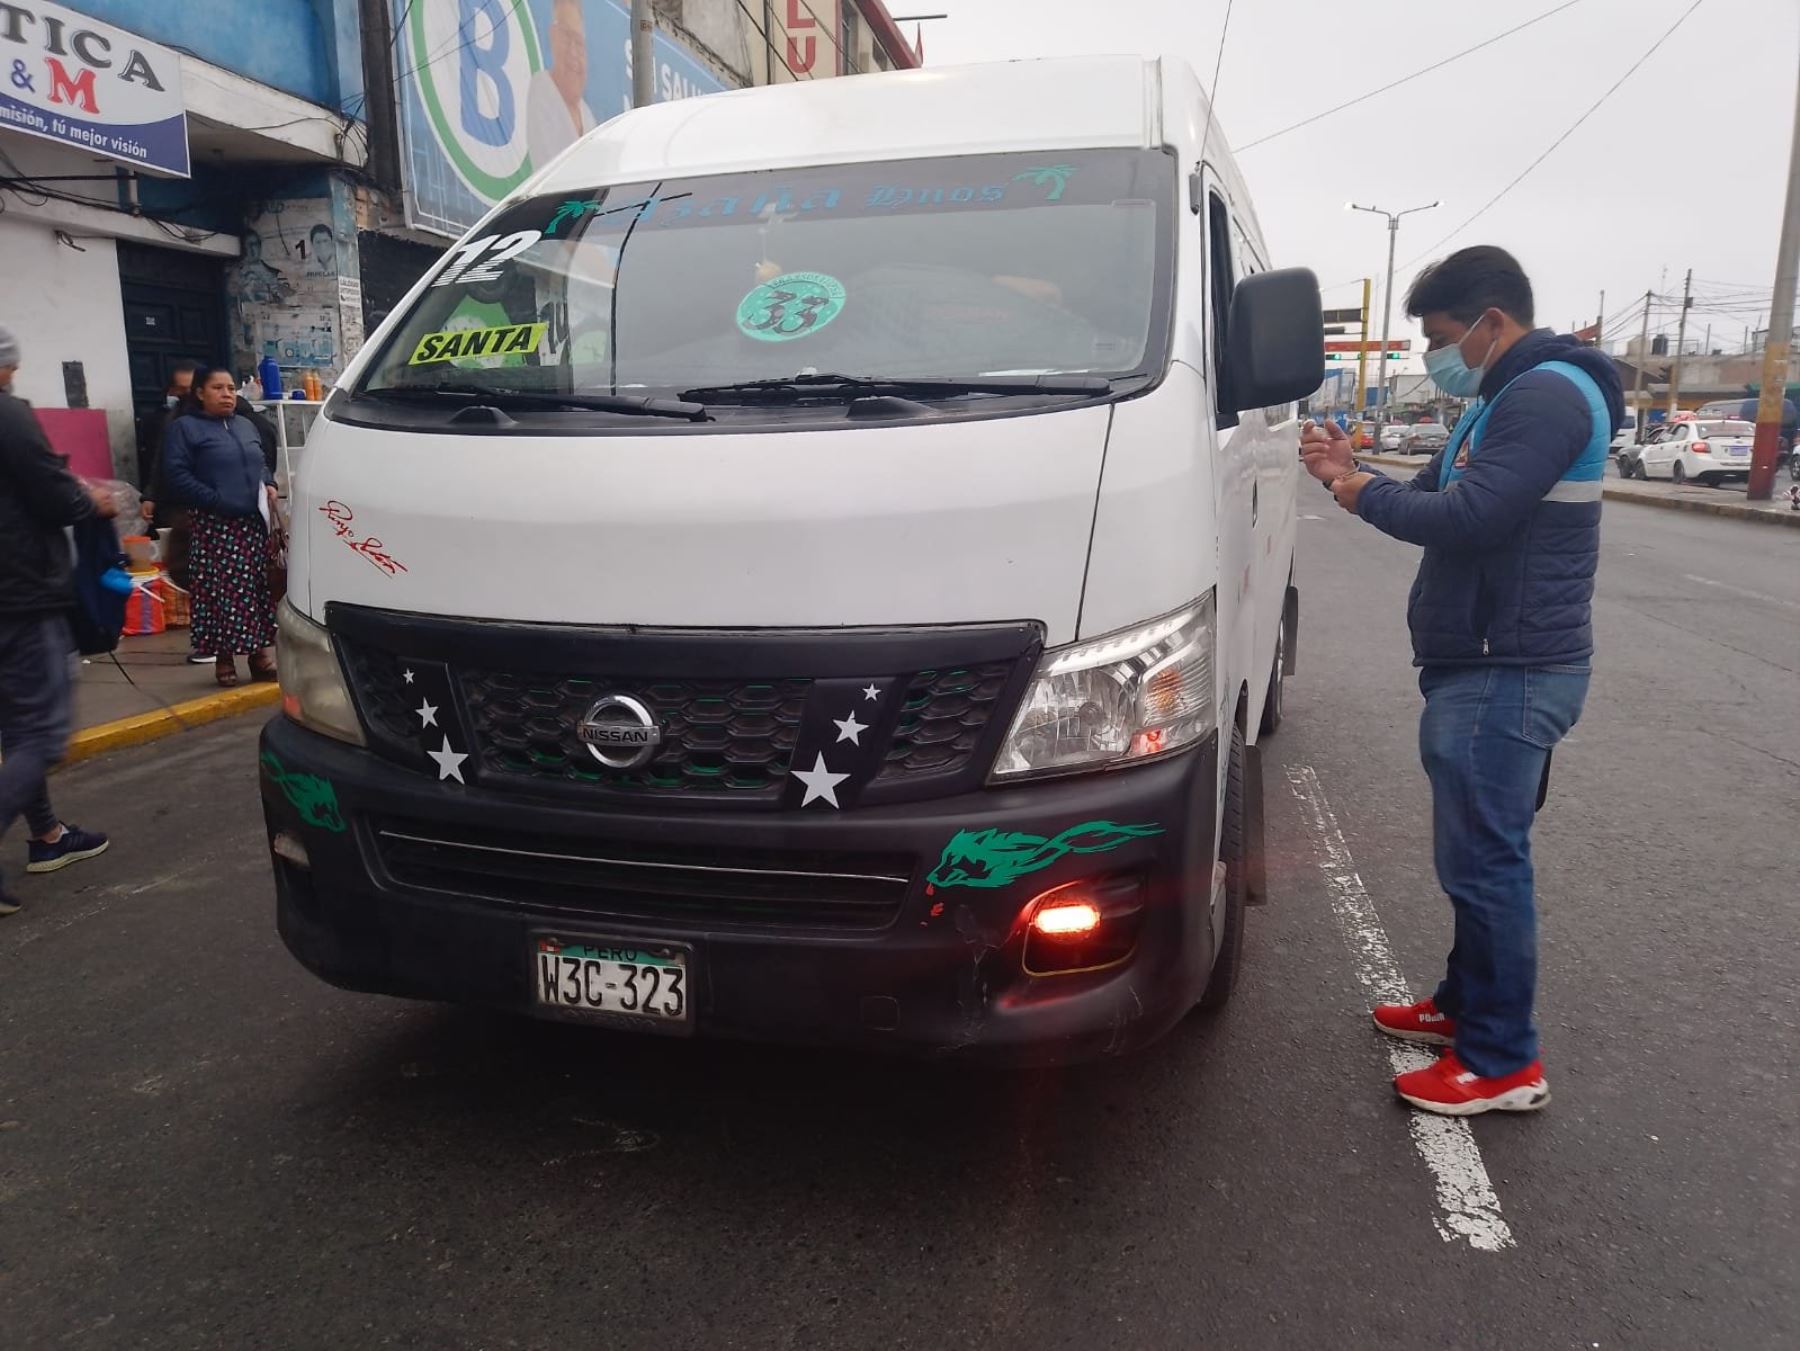 Inspectores de la municipalidad del Santa verifican el uso de mascarilla en conductores de transporte público de la ciudad de Chimbote. ANDINA/Difusión